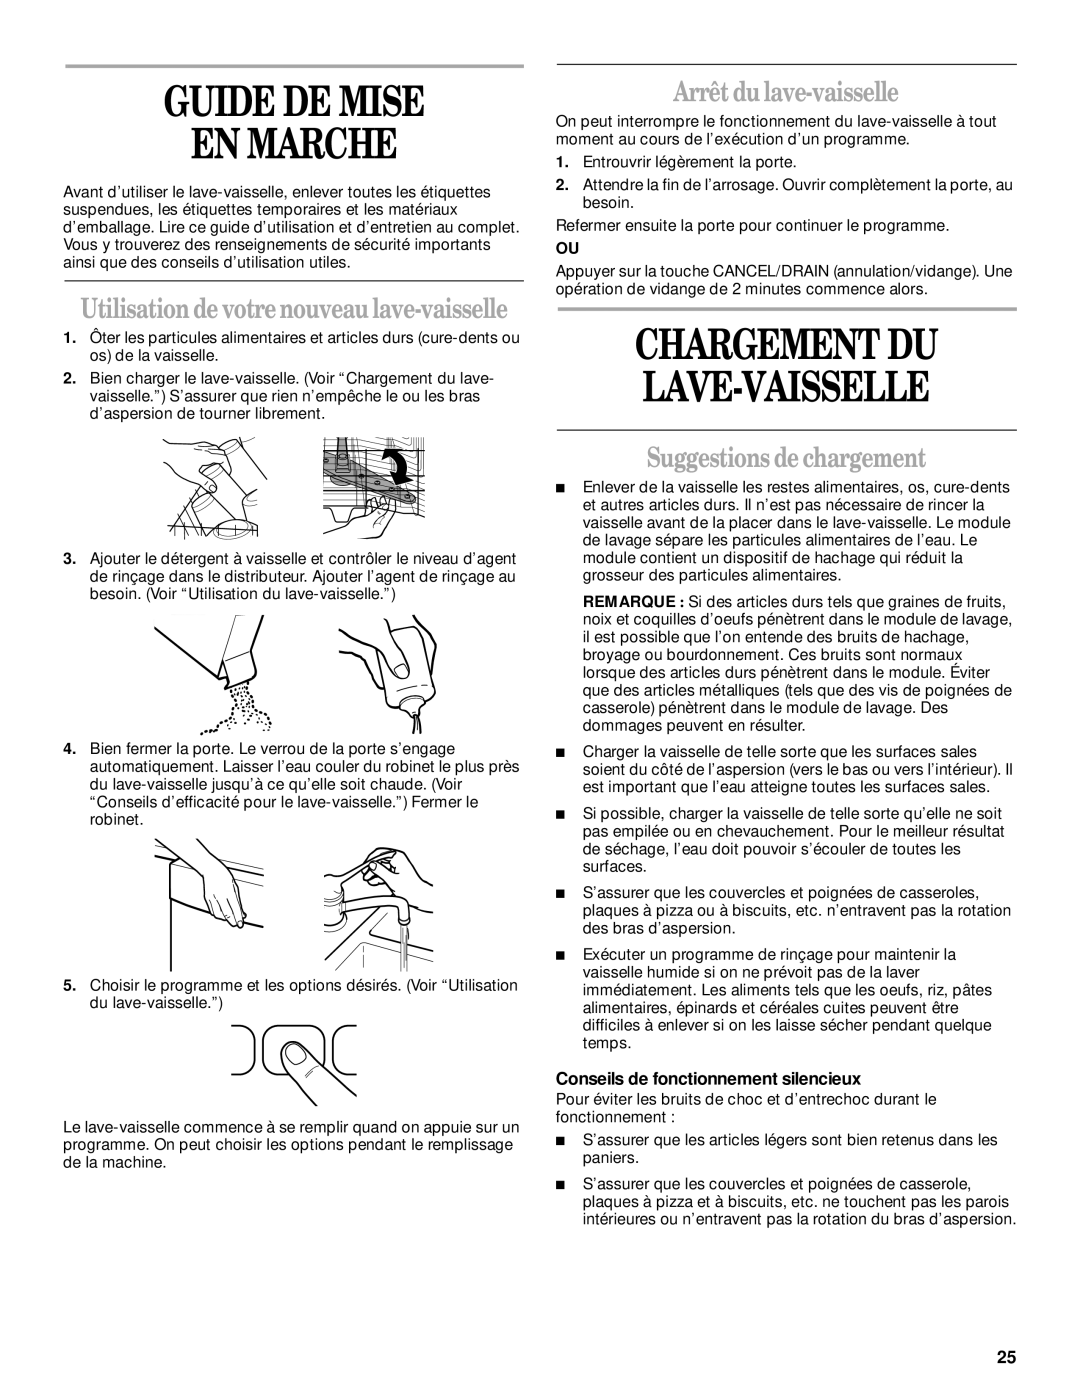 Whirlpool 931 Guide De Mise En Marche, Chargement Du Lave-Vaisselle, Arrêt du lave-vaisselle, Suggestions de chargement 